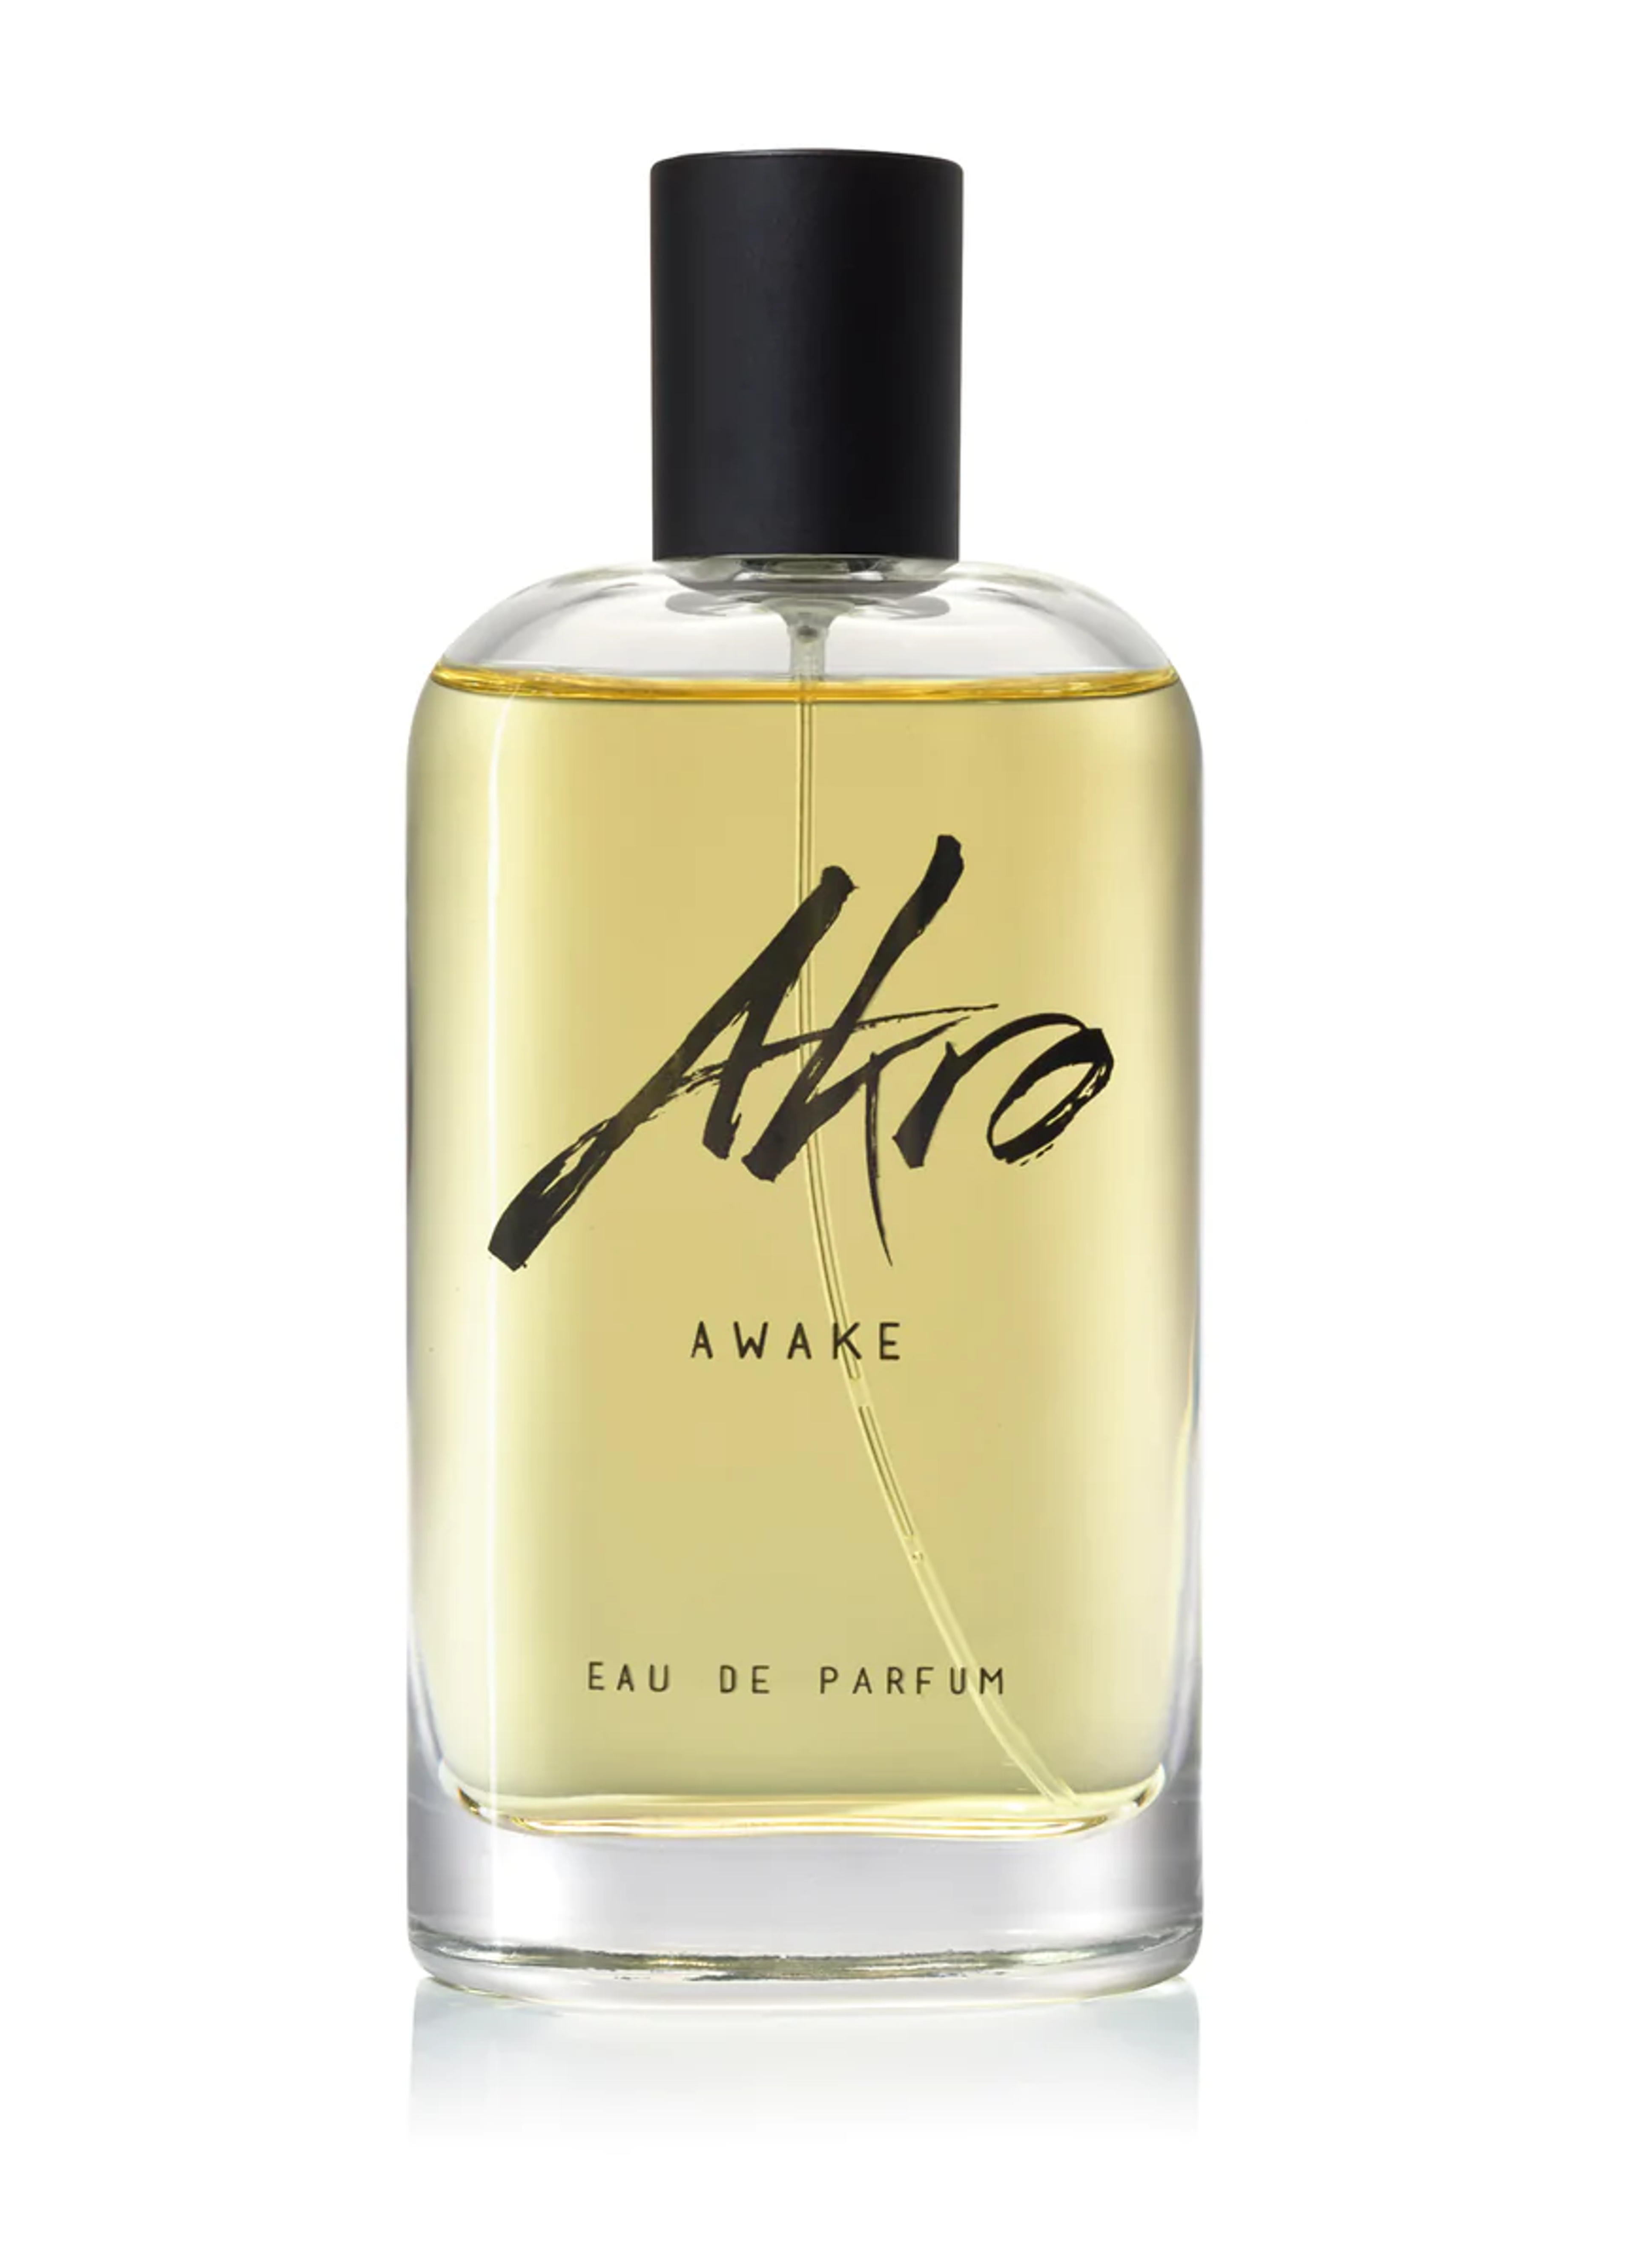 AKRO Awake – Official US AKRO Perfume Store